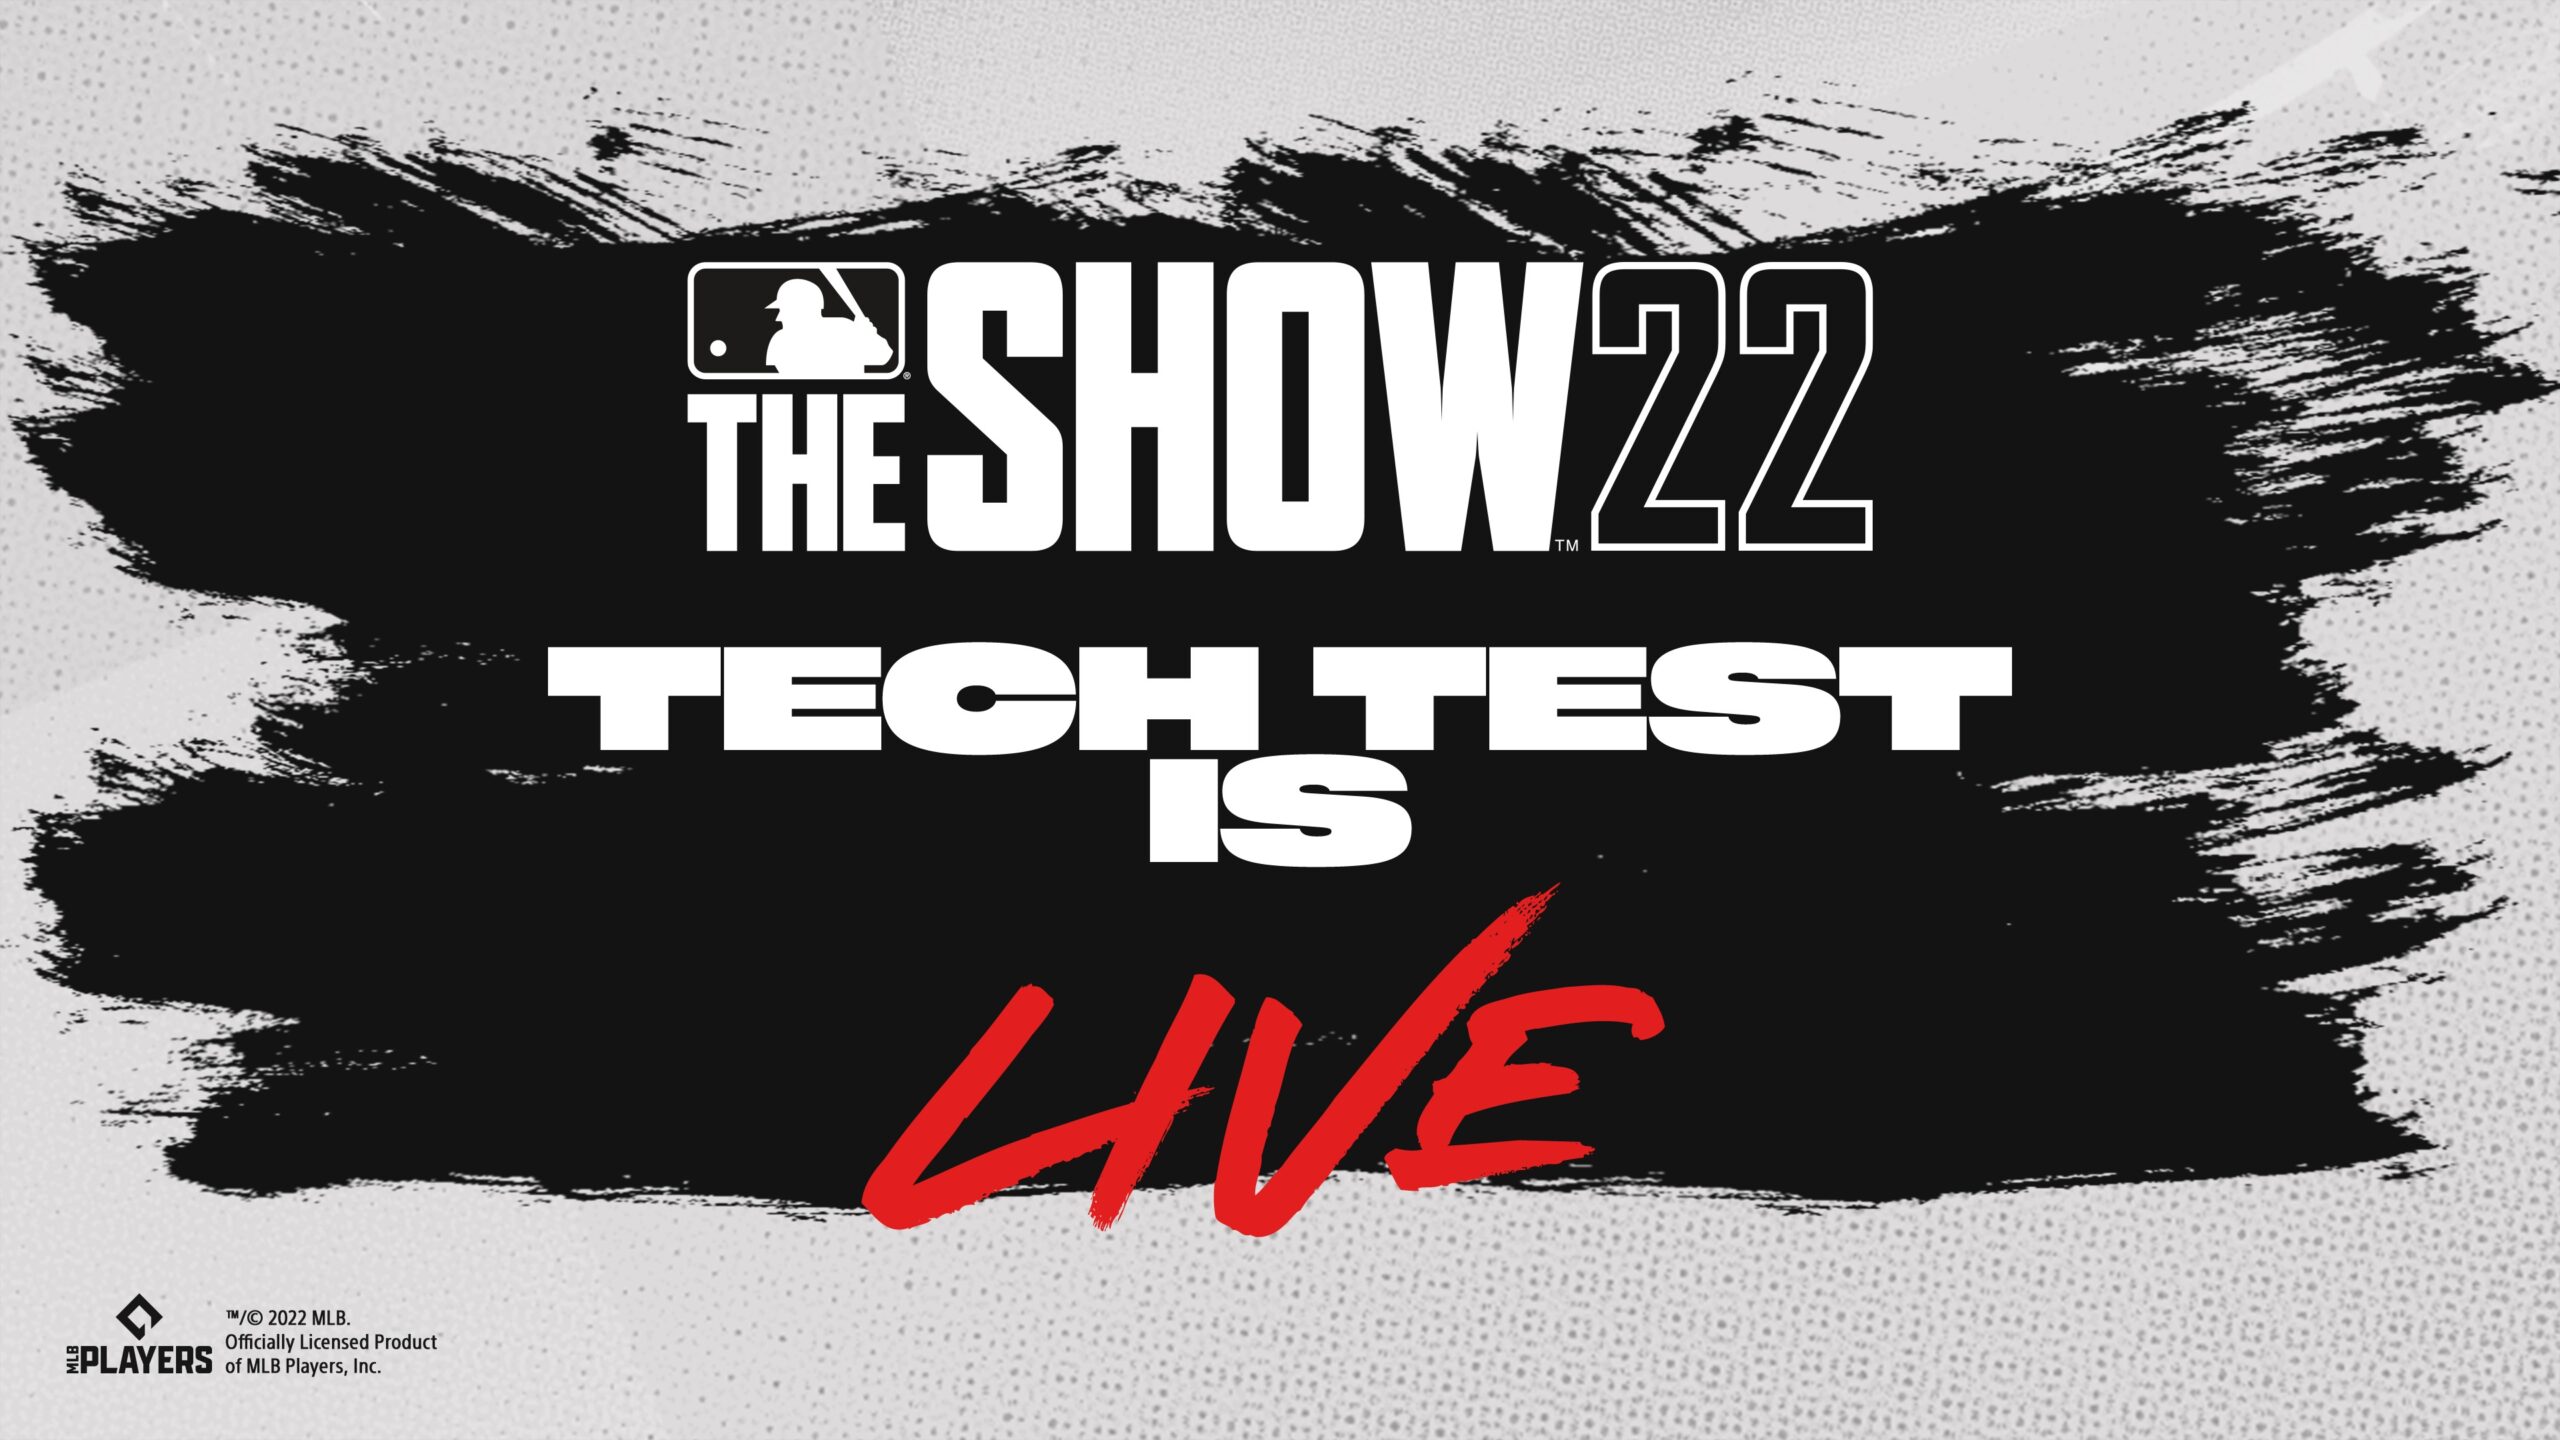 La prueba técnica de MLB The Show 22 ya está disponible